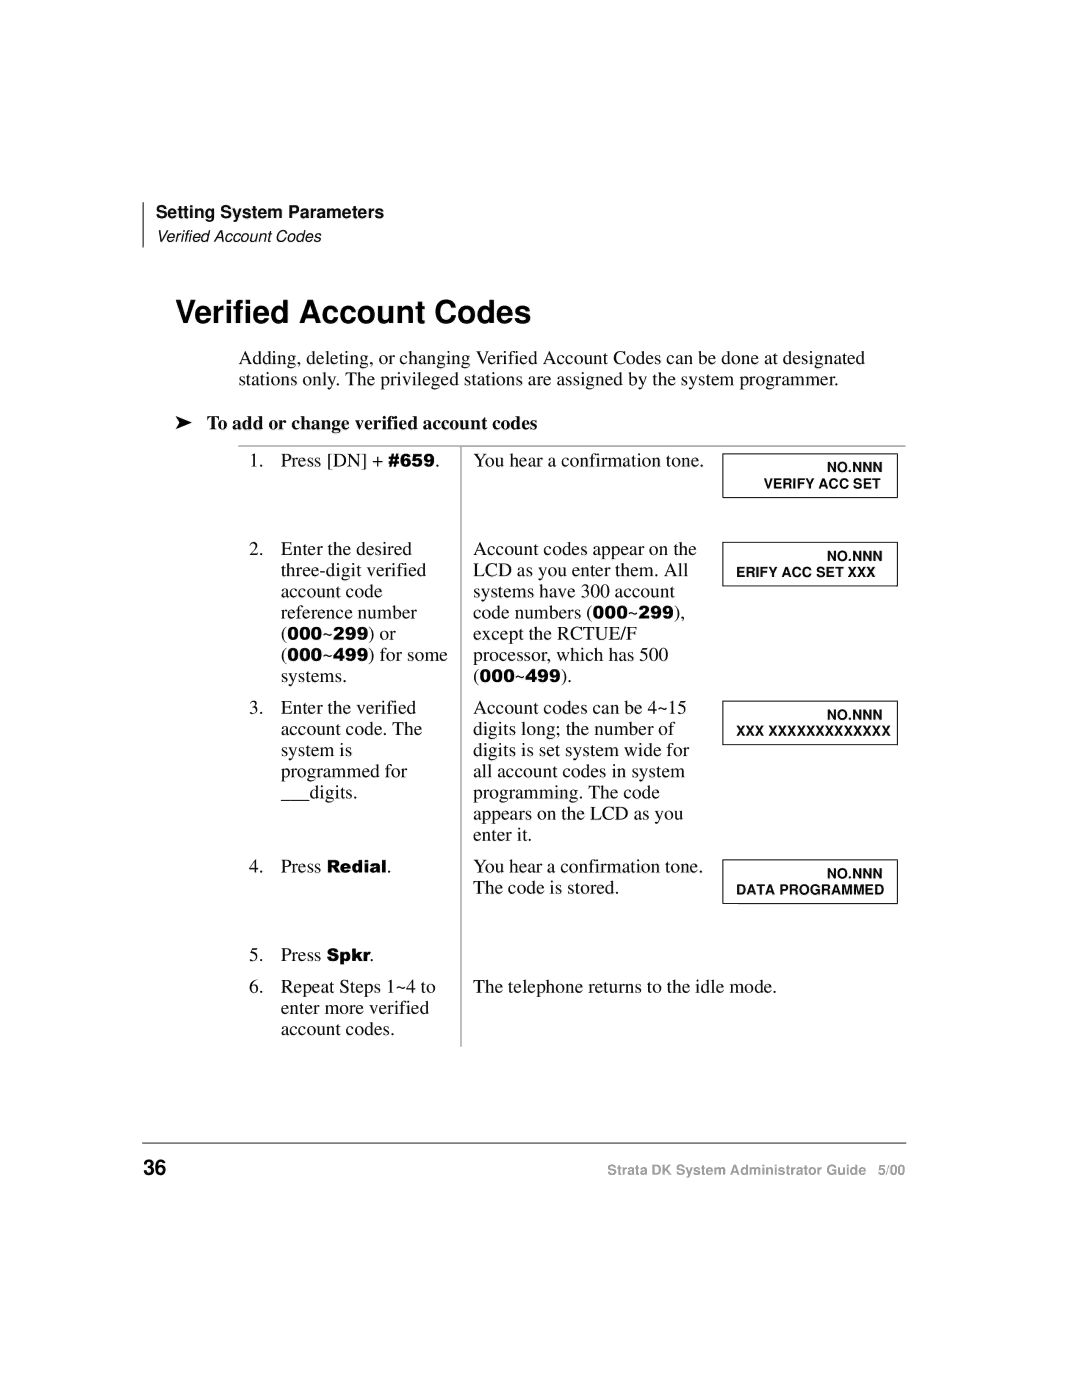 Toshiba DKA-AG-SYSTEMVD manual Verified Account Codes, To add or change verified account codes 